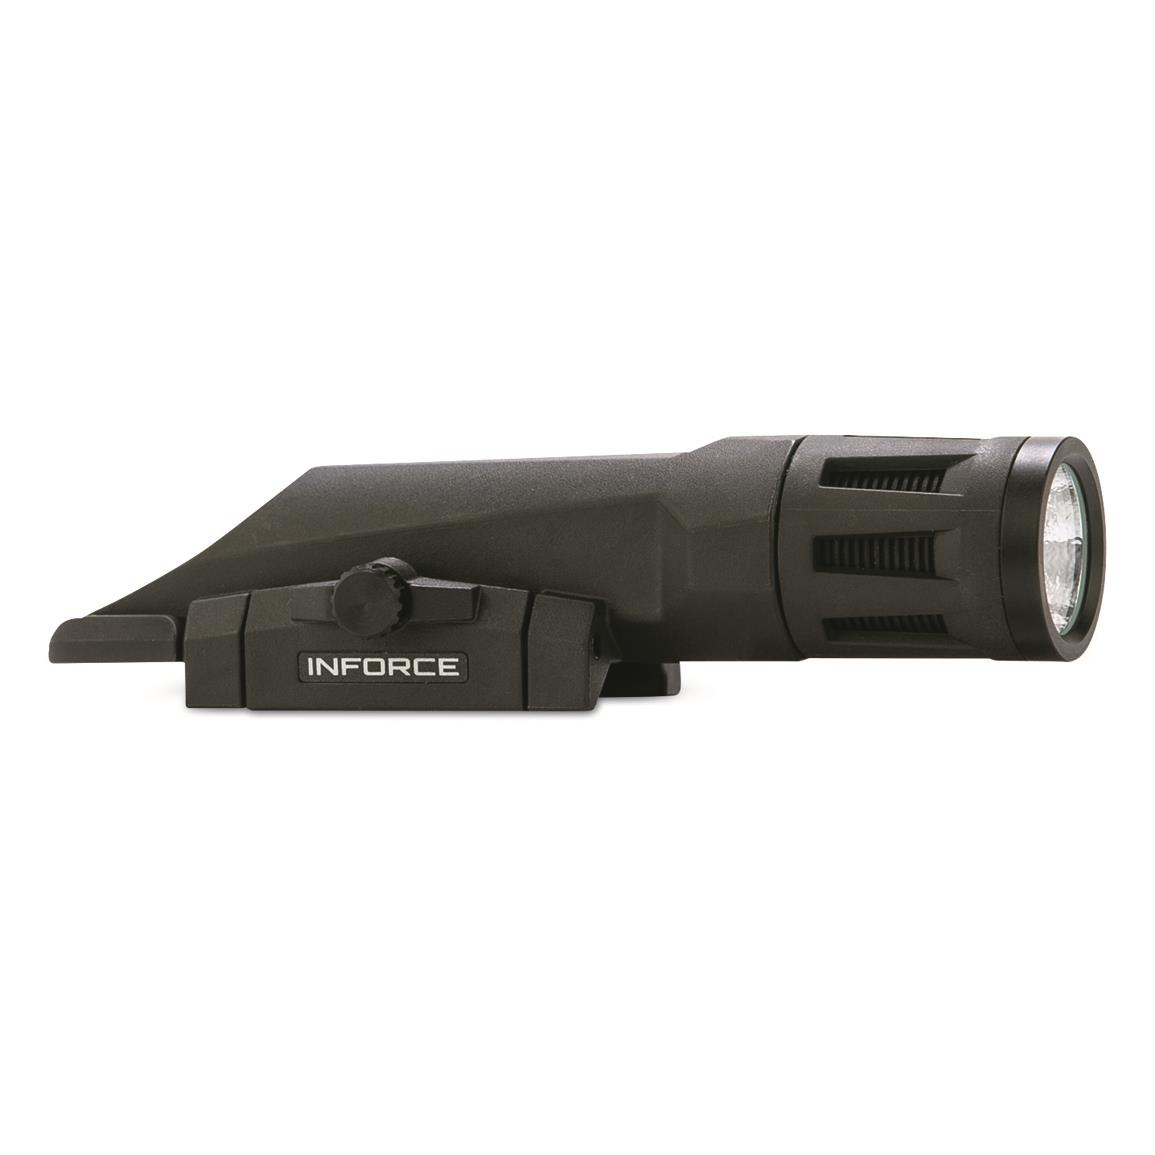 Inforce WMLx Gen2 700-lumen Rifle Light with IR, Black